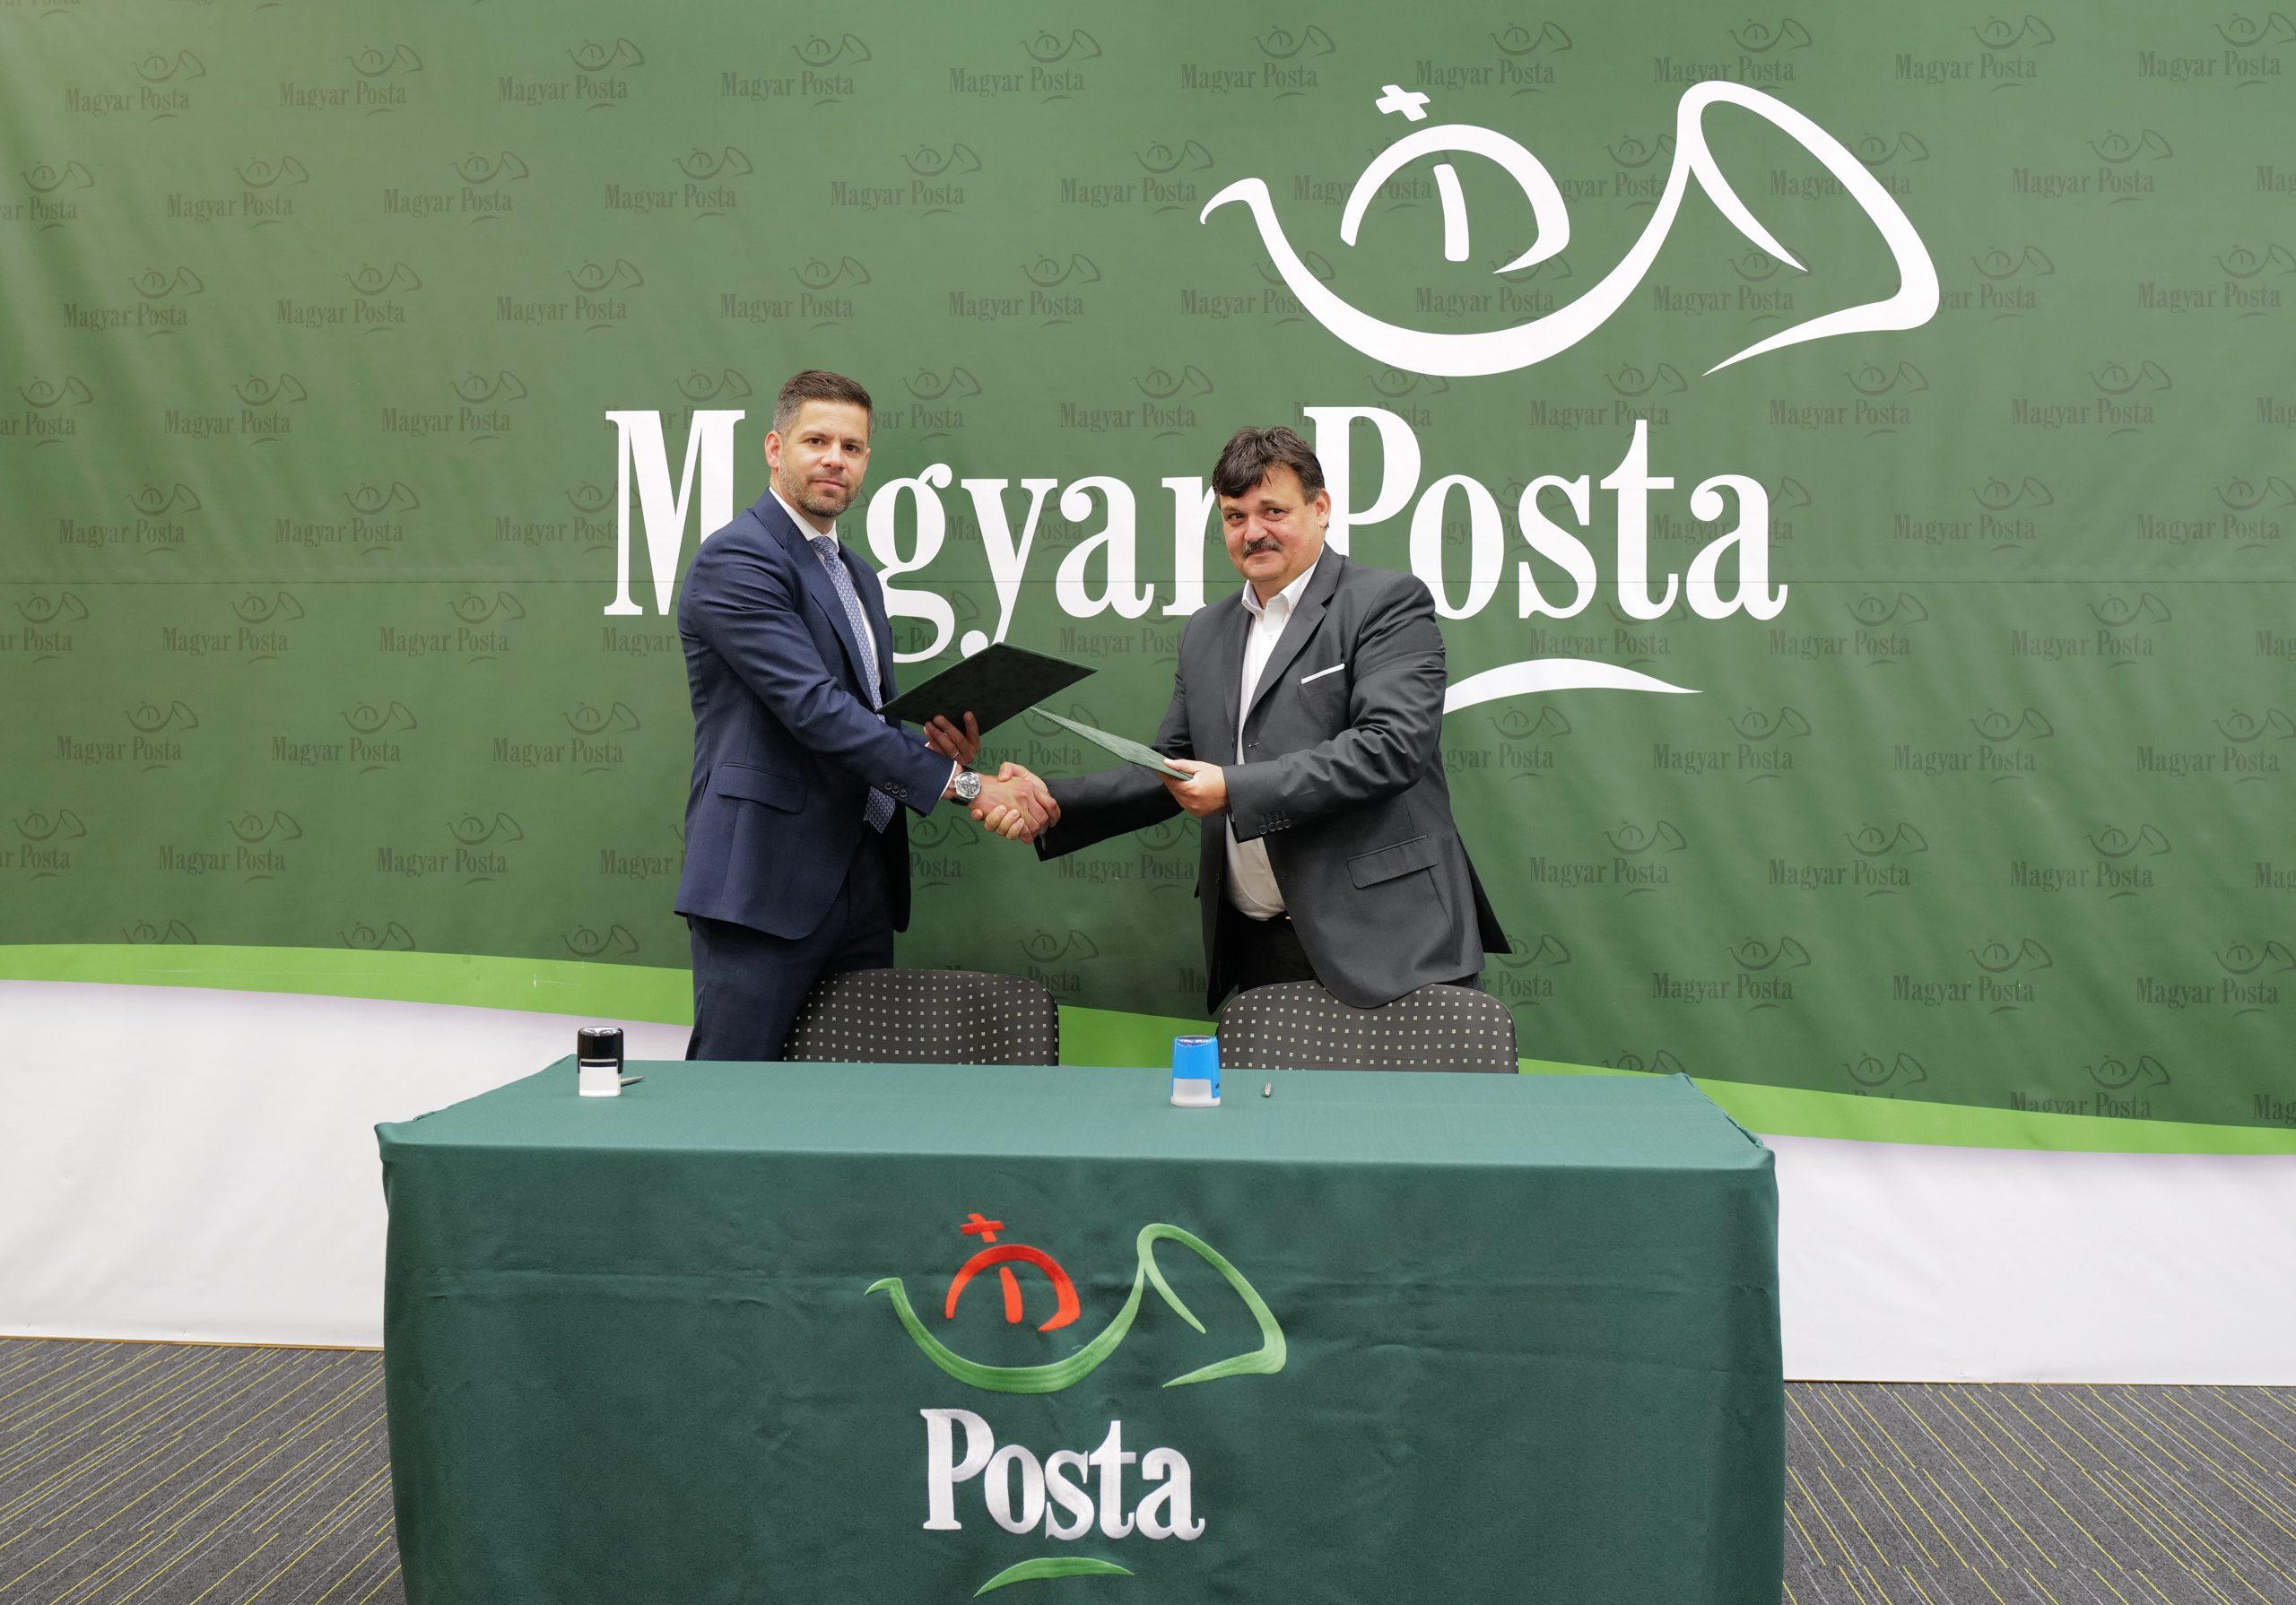 Együttműködési megállapodást kötött a Magyar Posta Zrt. és a Települési Önkormányzatok Országos Szövetsége, az új postapartneri program előnyeinek megismertetésében a TÖOSZ is közreműködik